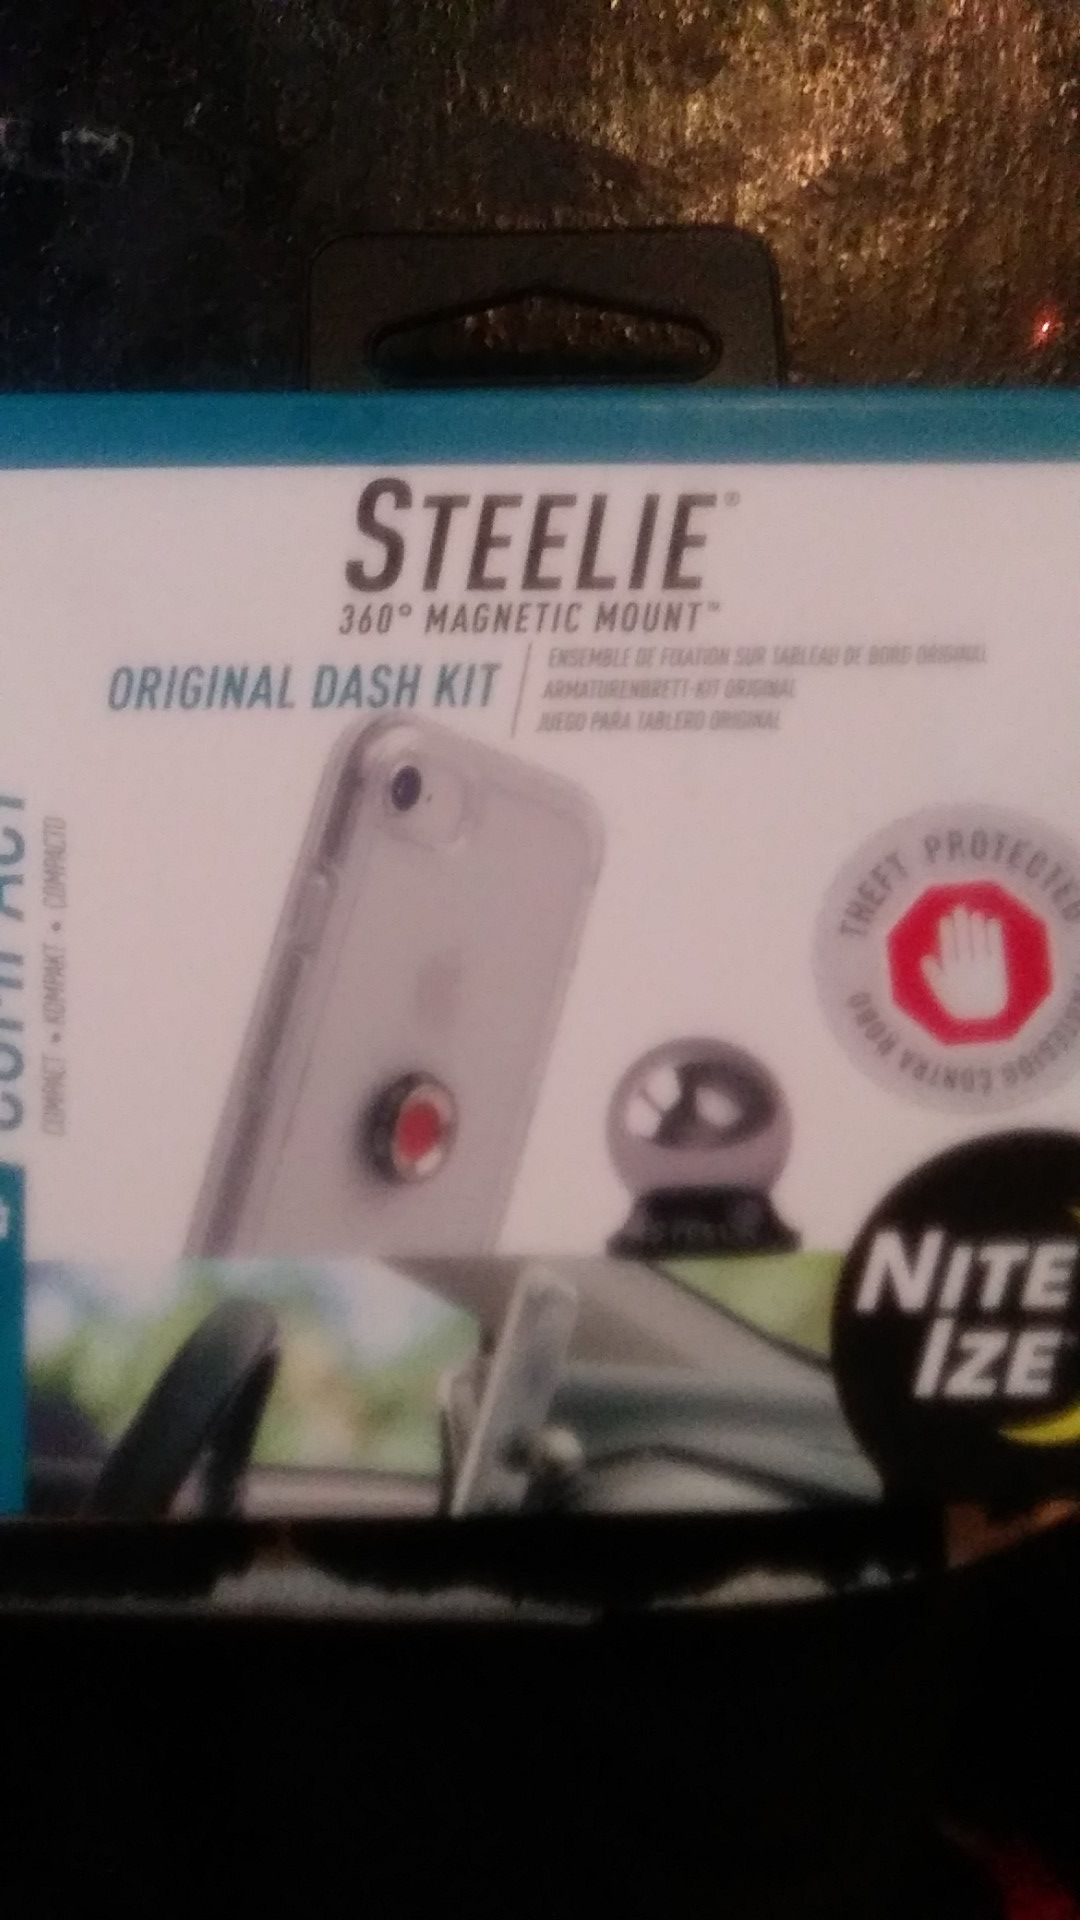 Steele 360 Magnet Mount original Dash Kit